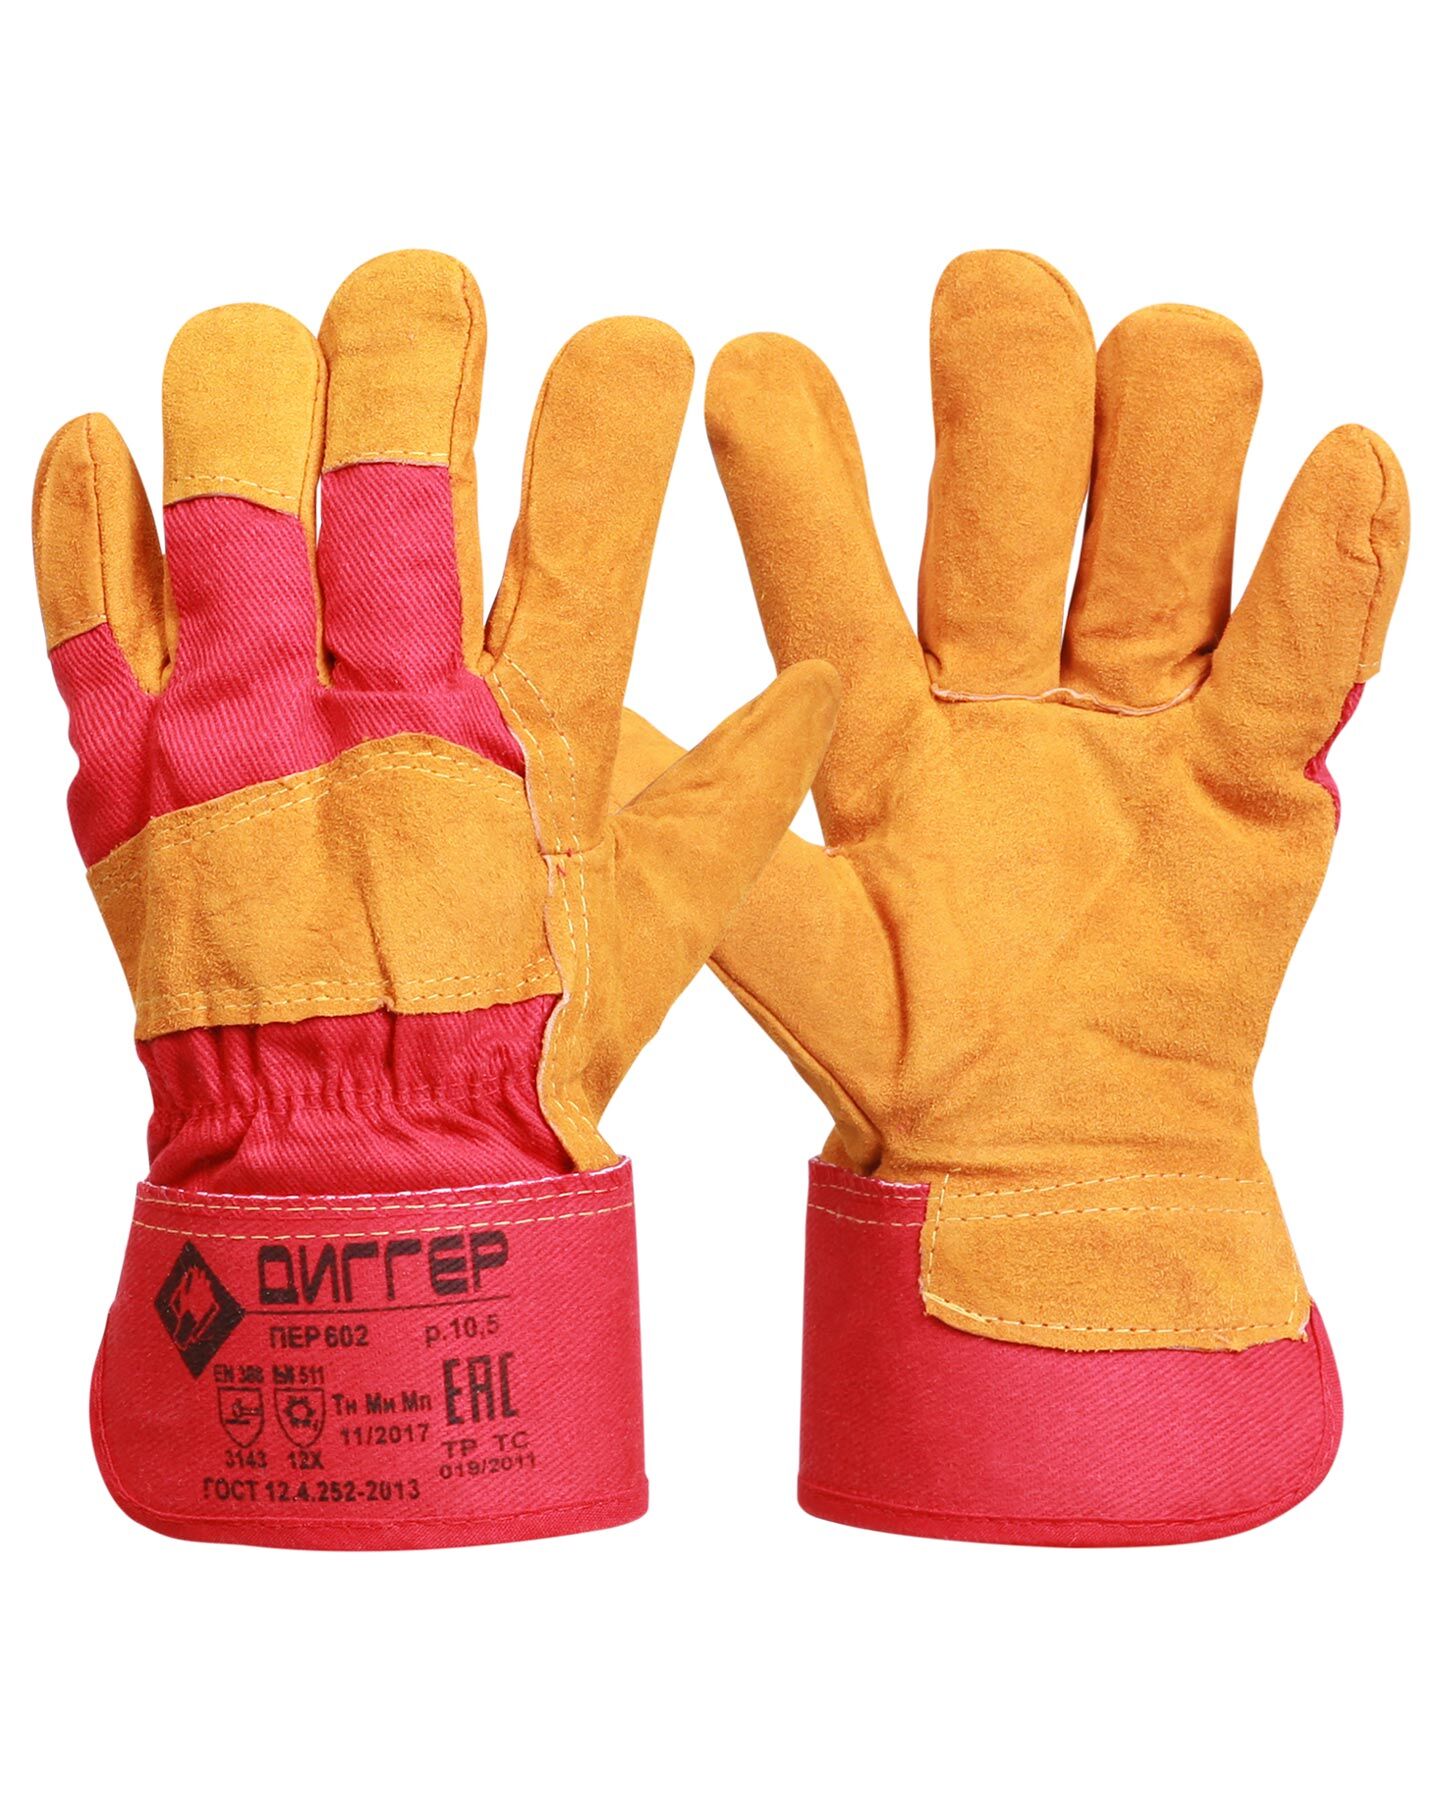 Перчатки утеплённые спилковые ДИГГЕР комбинированные мех 750 г/м2, жёлто-красные, дл.27 см, р10.5 (пер602)